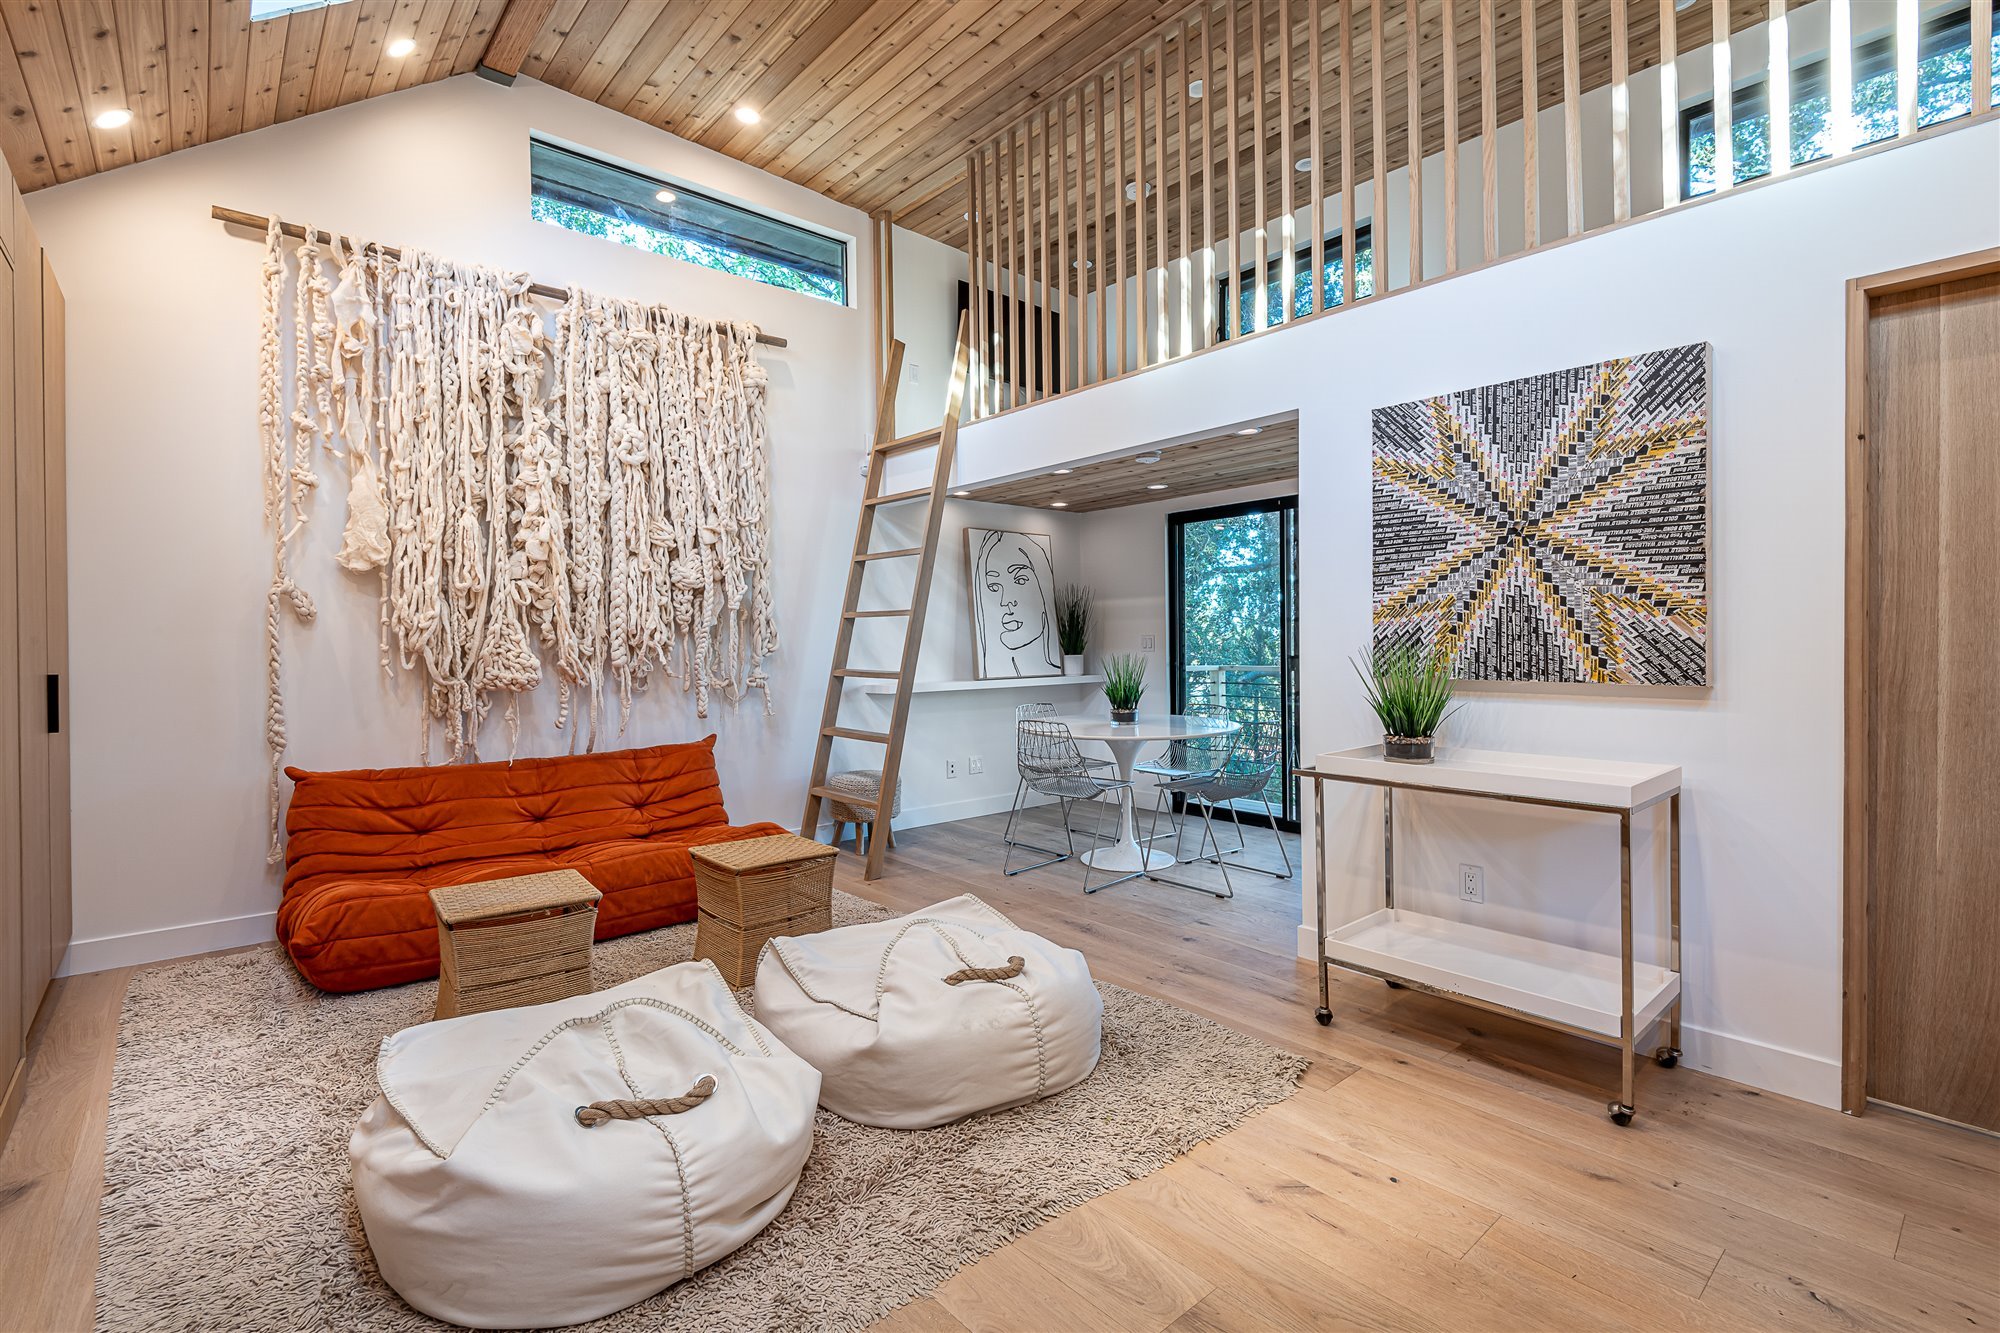 Casa moderna del actor de Modern Family Jesse Tyler Ferguson en Encino los Angeles casita de invitados con doble altura